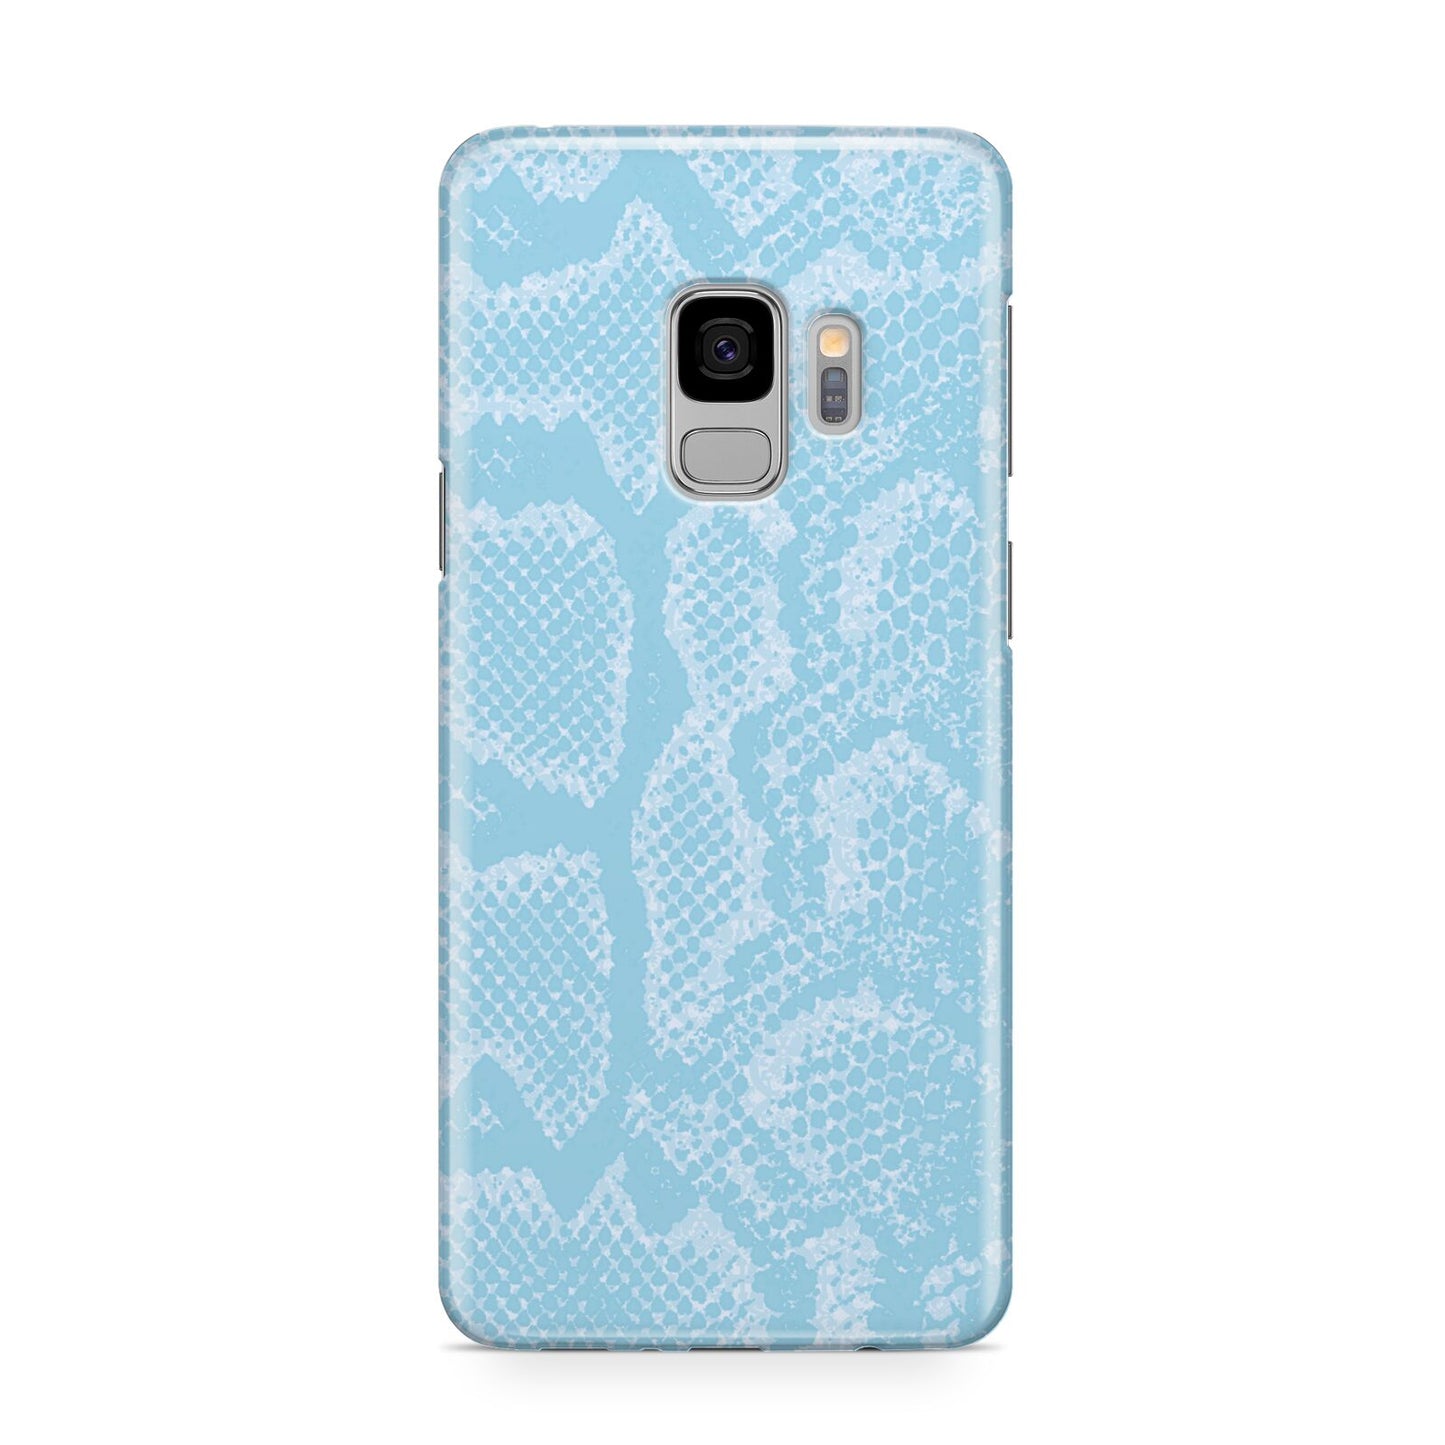 Blue Snakeskin Samsung Galaxy S9 Case